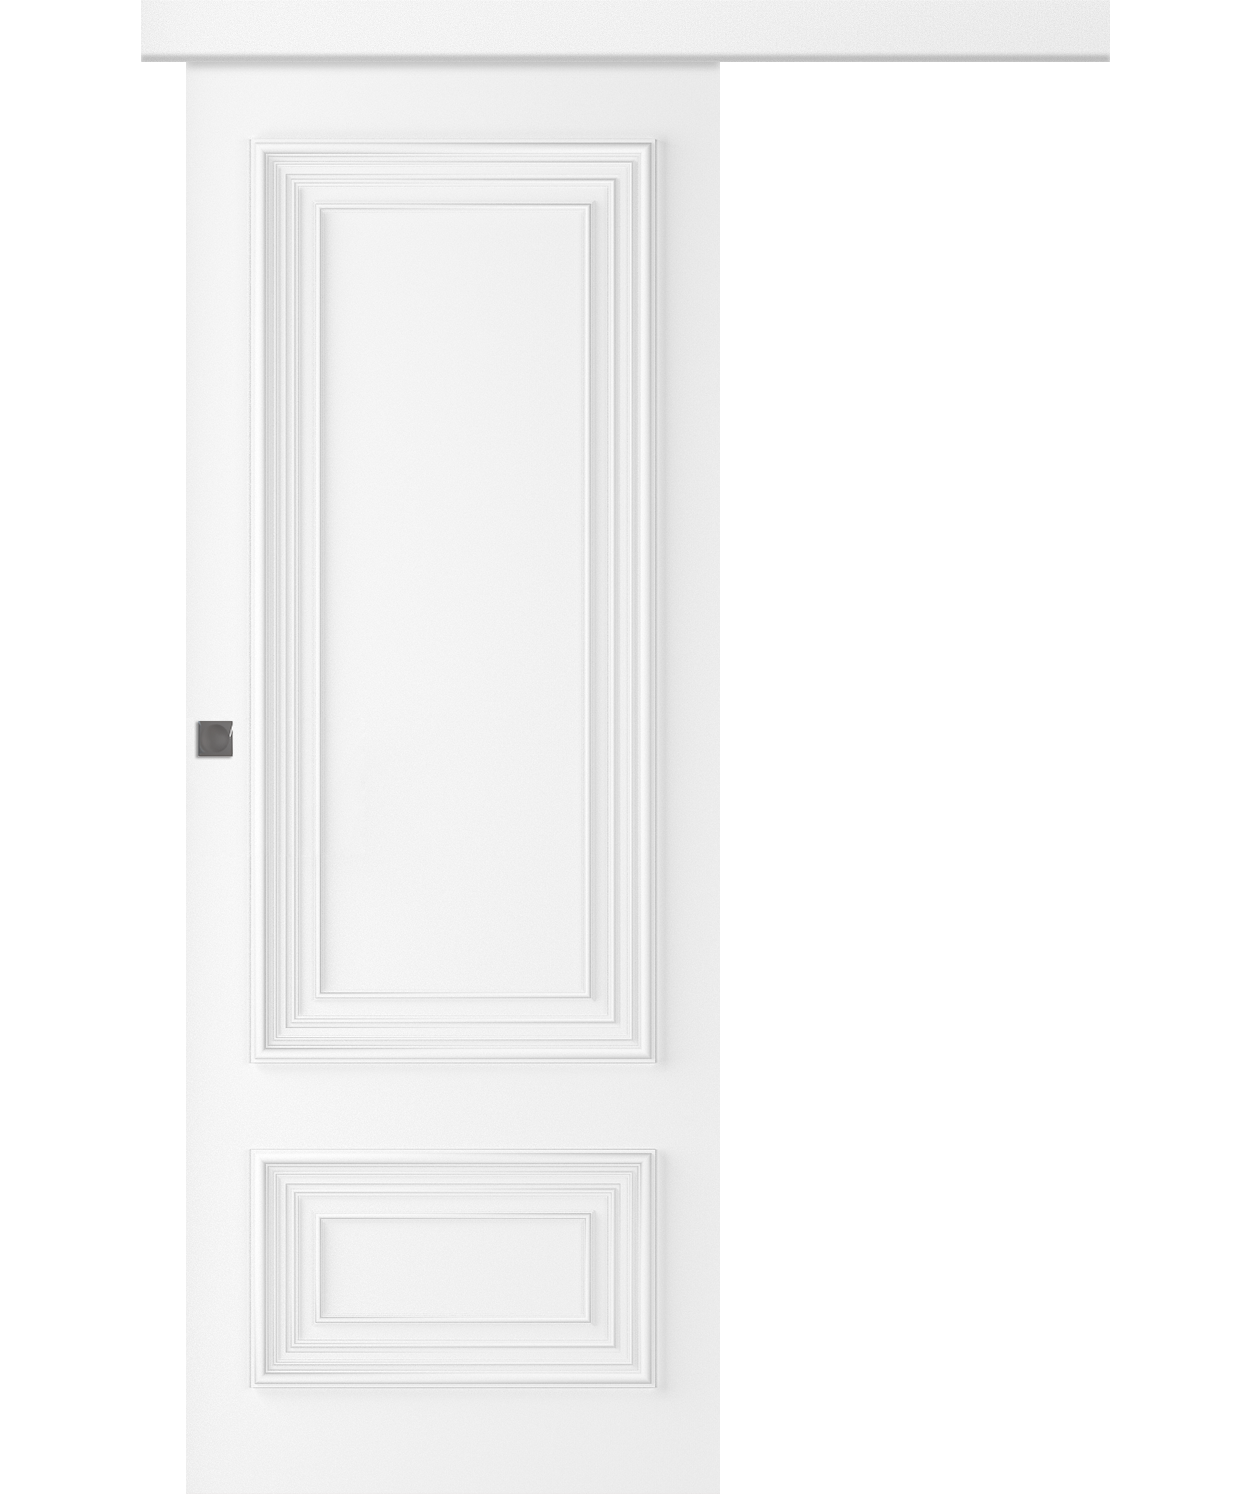 Дверное Полотно Пвдгщ "Палаццо 2" Эмаль Белый 2,0-0,6 Smart Core Купе